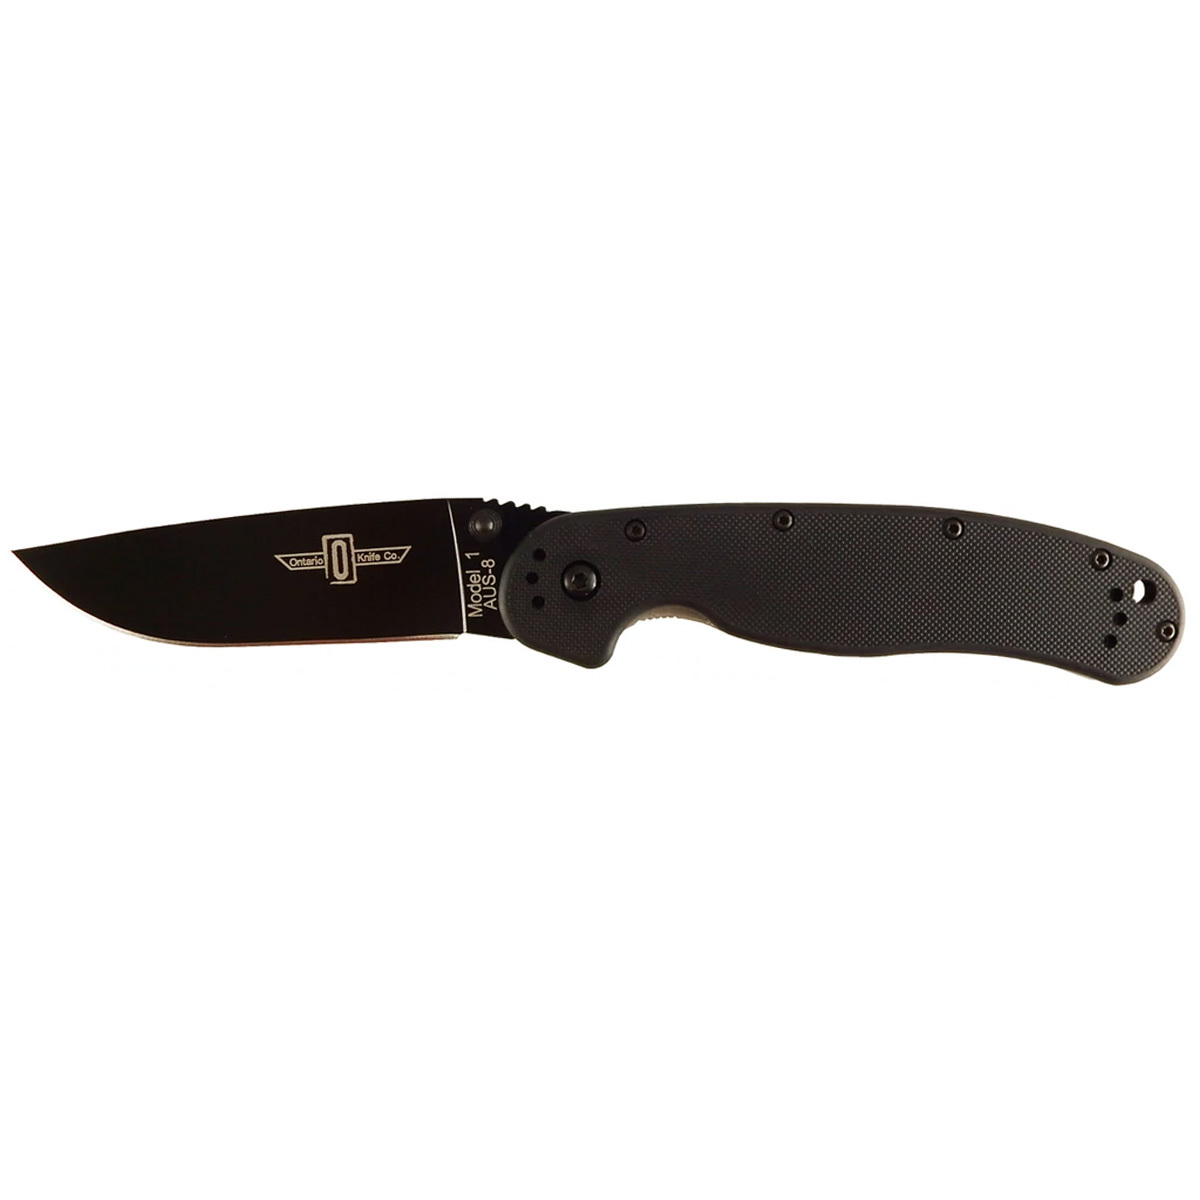 Нож Ontario 8846 RAT 1 Black нож с фиксированным клинком ontario afhgan black micarta